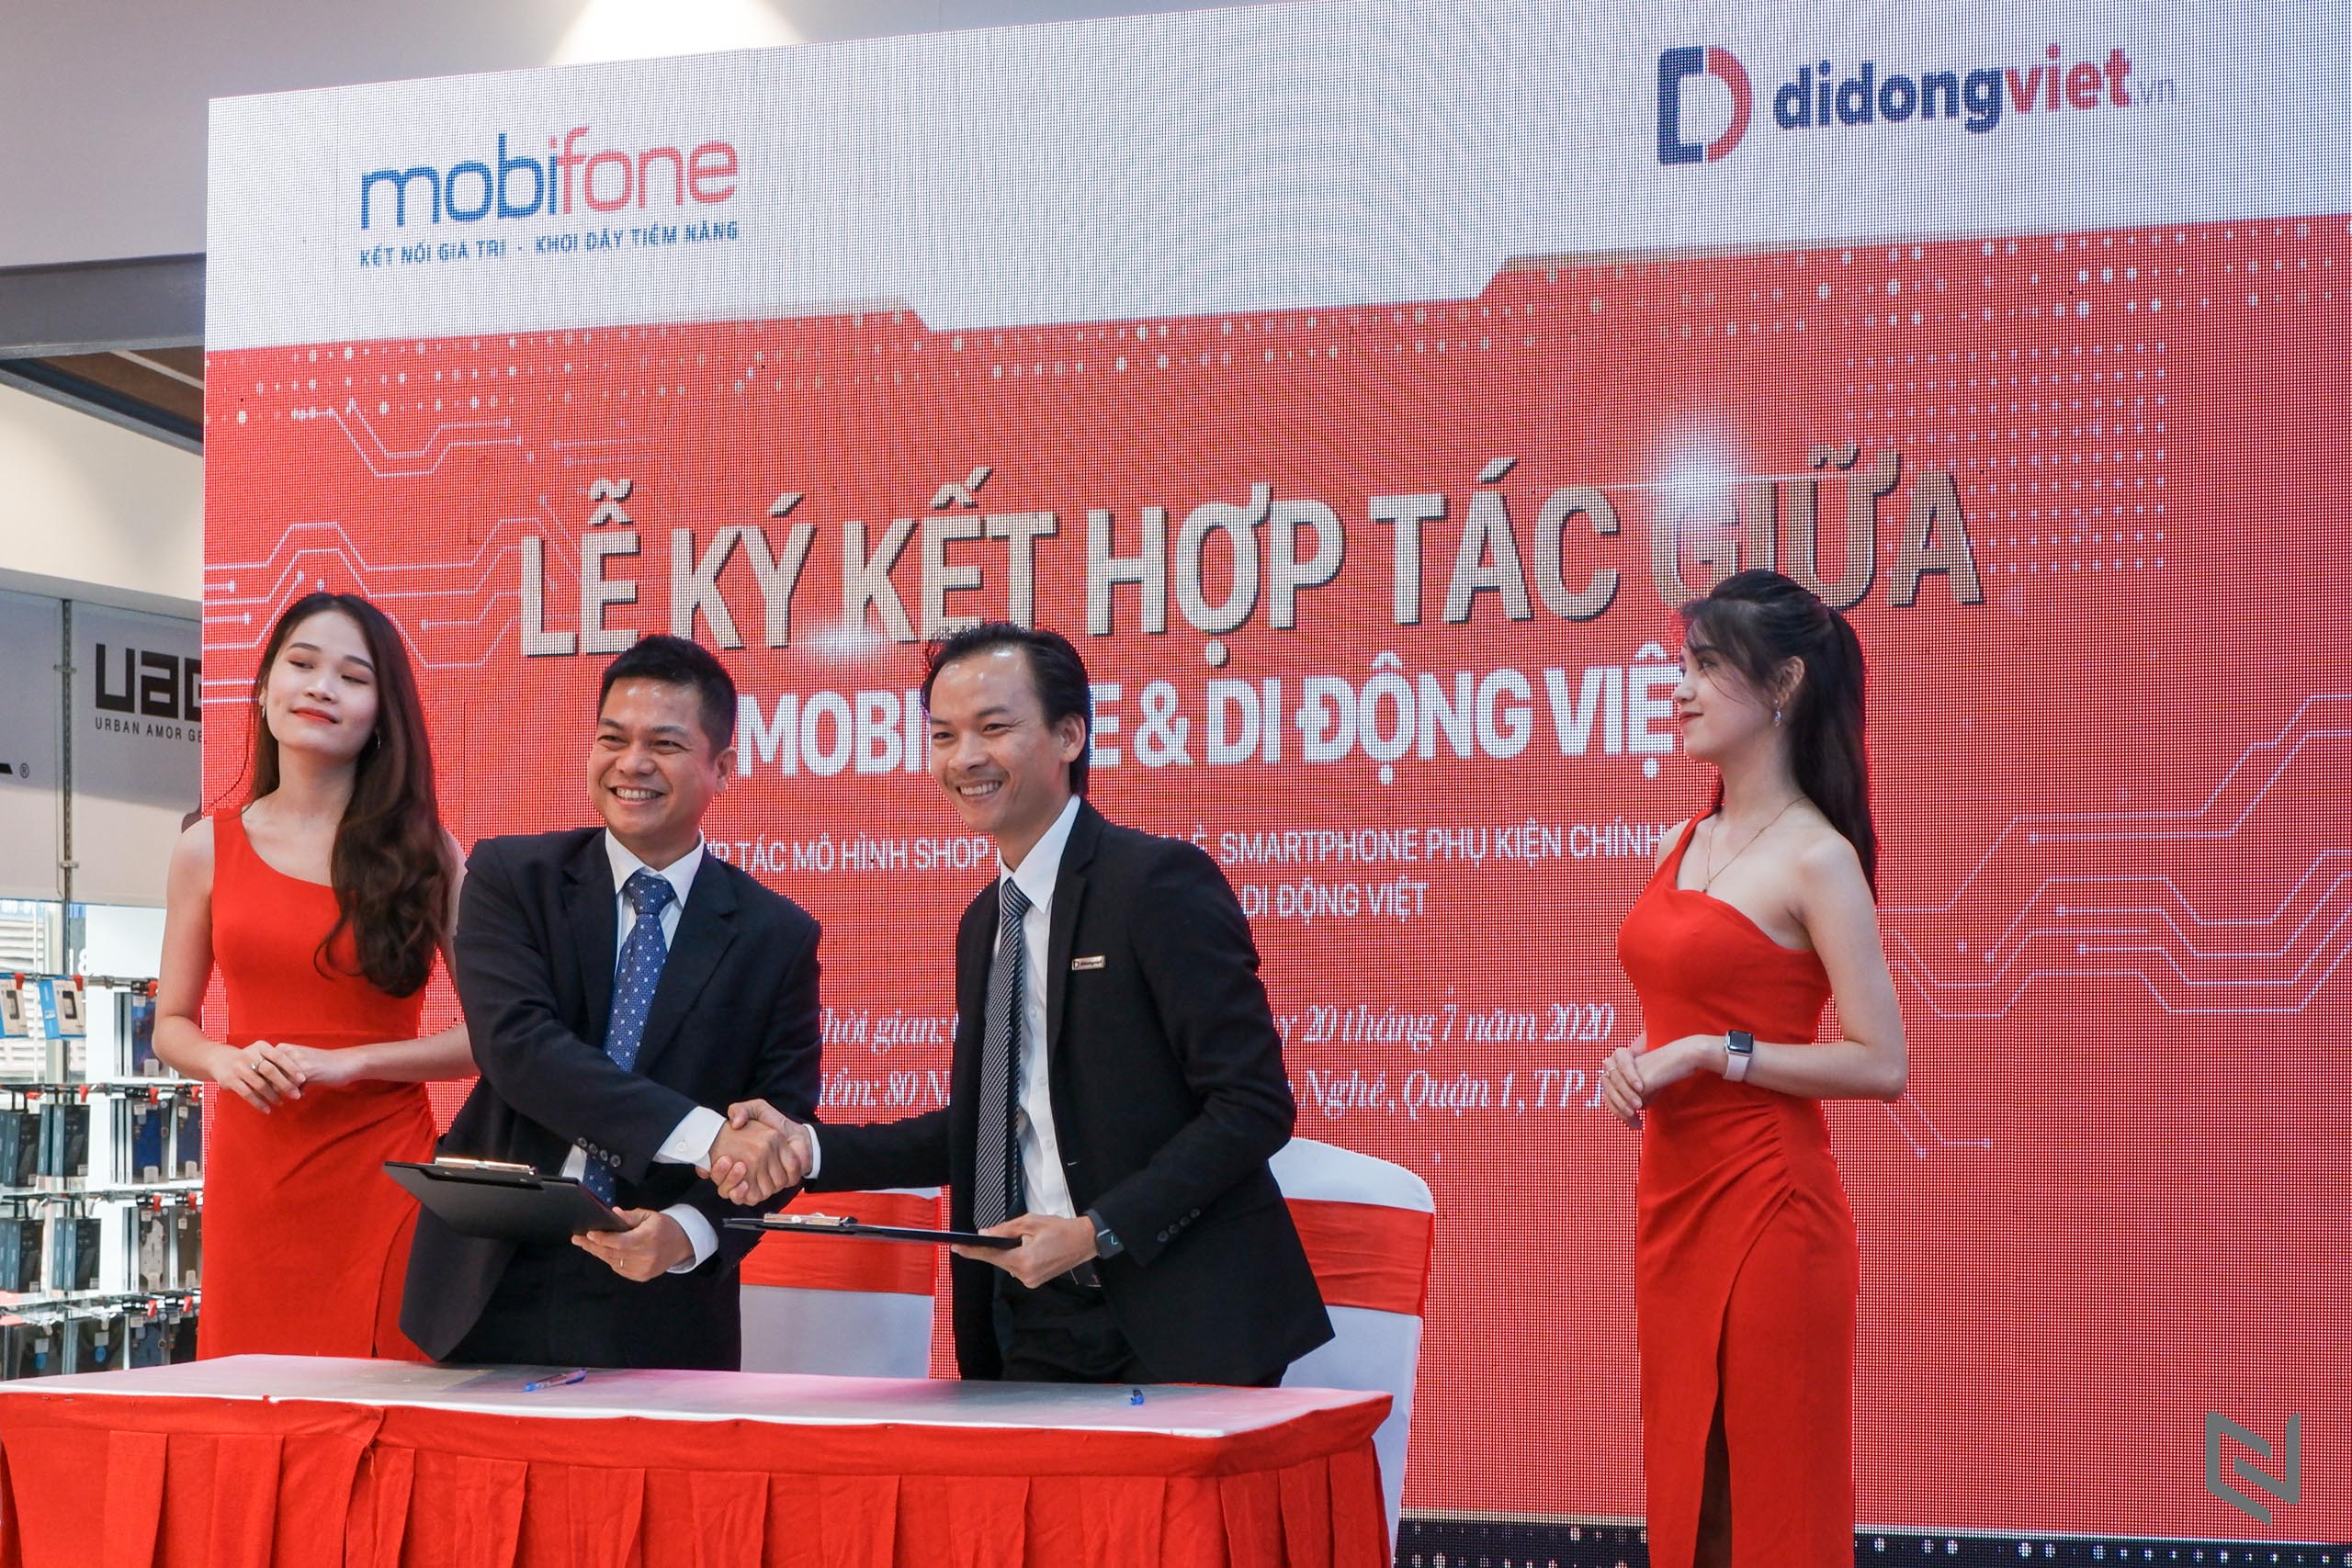 Di Động Việt và MobiFone hợp tác bán lẻ điện thoại trong 11 cửa hàng liên kết tại TP.HCM